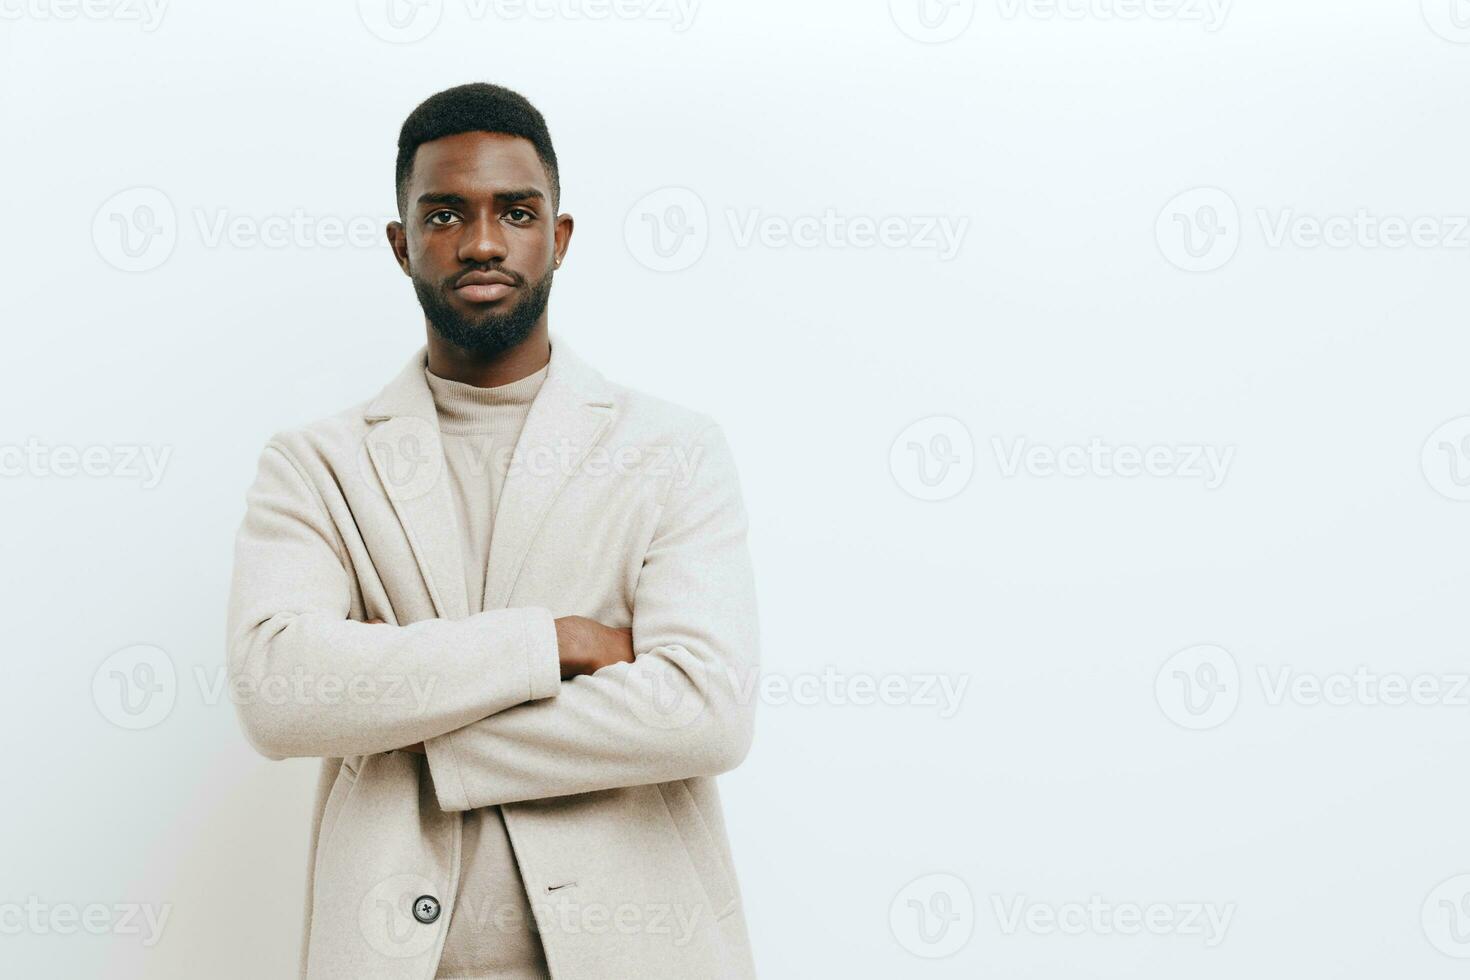 homme émotion africain africain adulte portrait Contexte américain mode gars noir expression américain photo